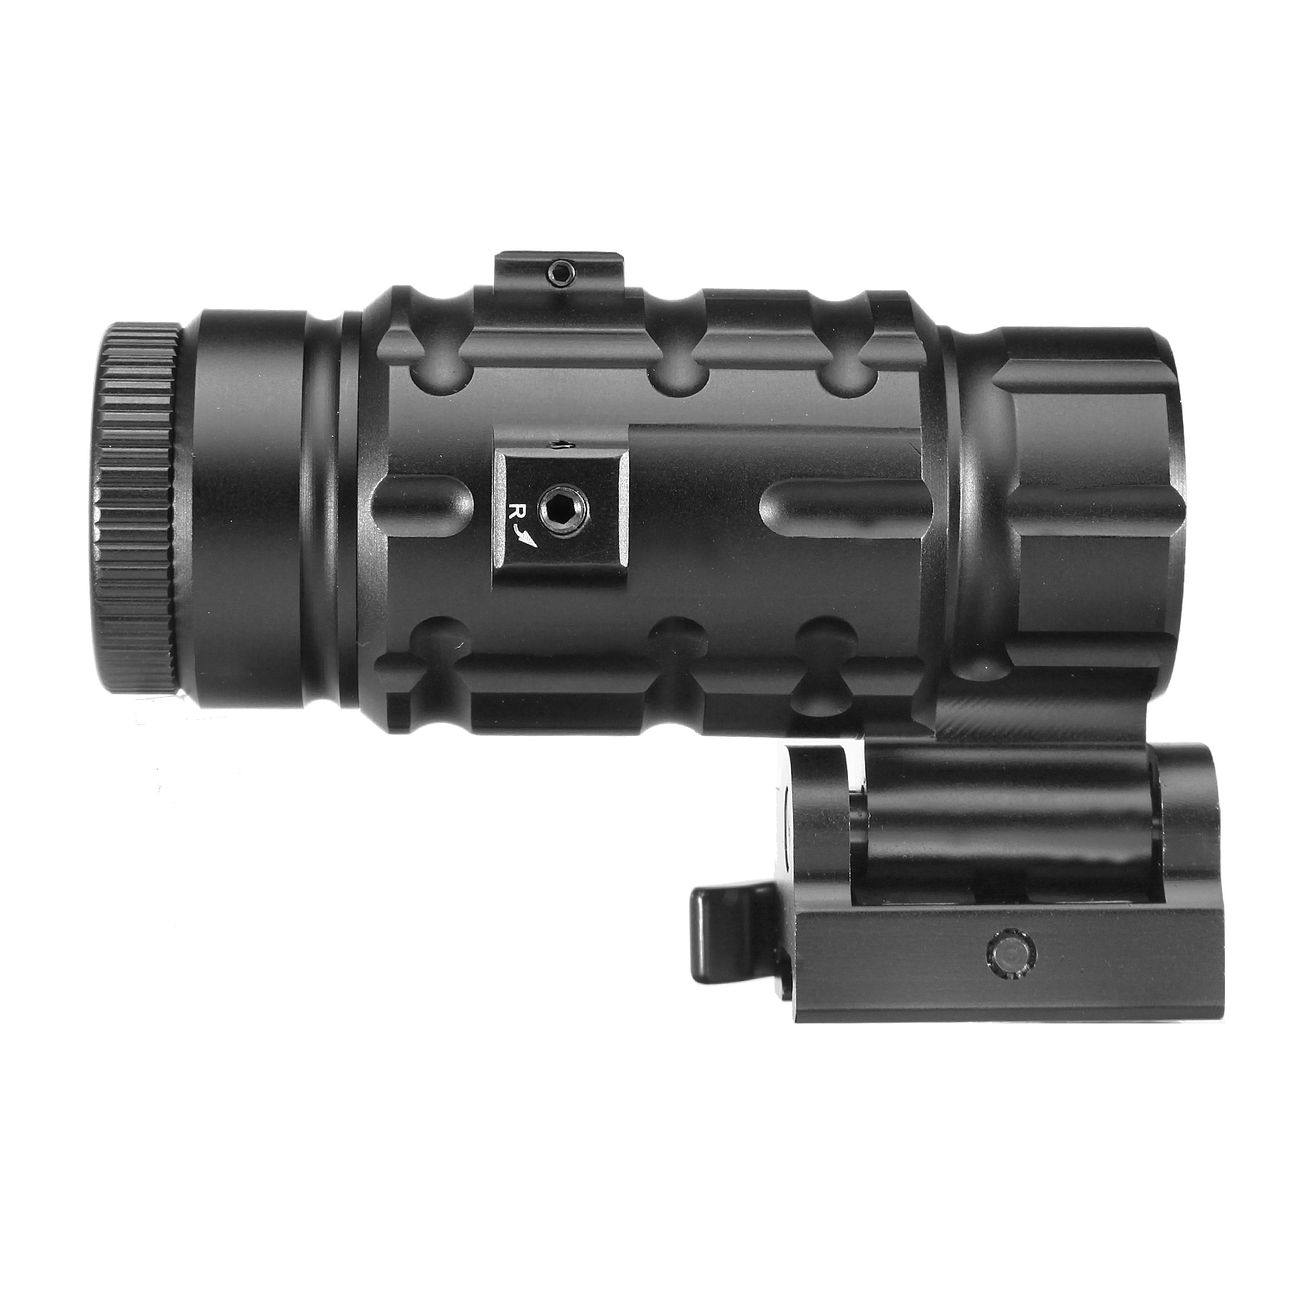 UTG 3X Magnifier mit Flip-To-Side QD-Halterung schwarz Bild 2